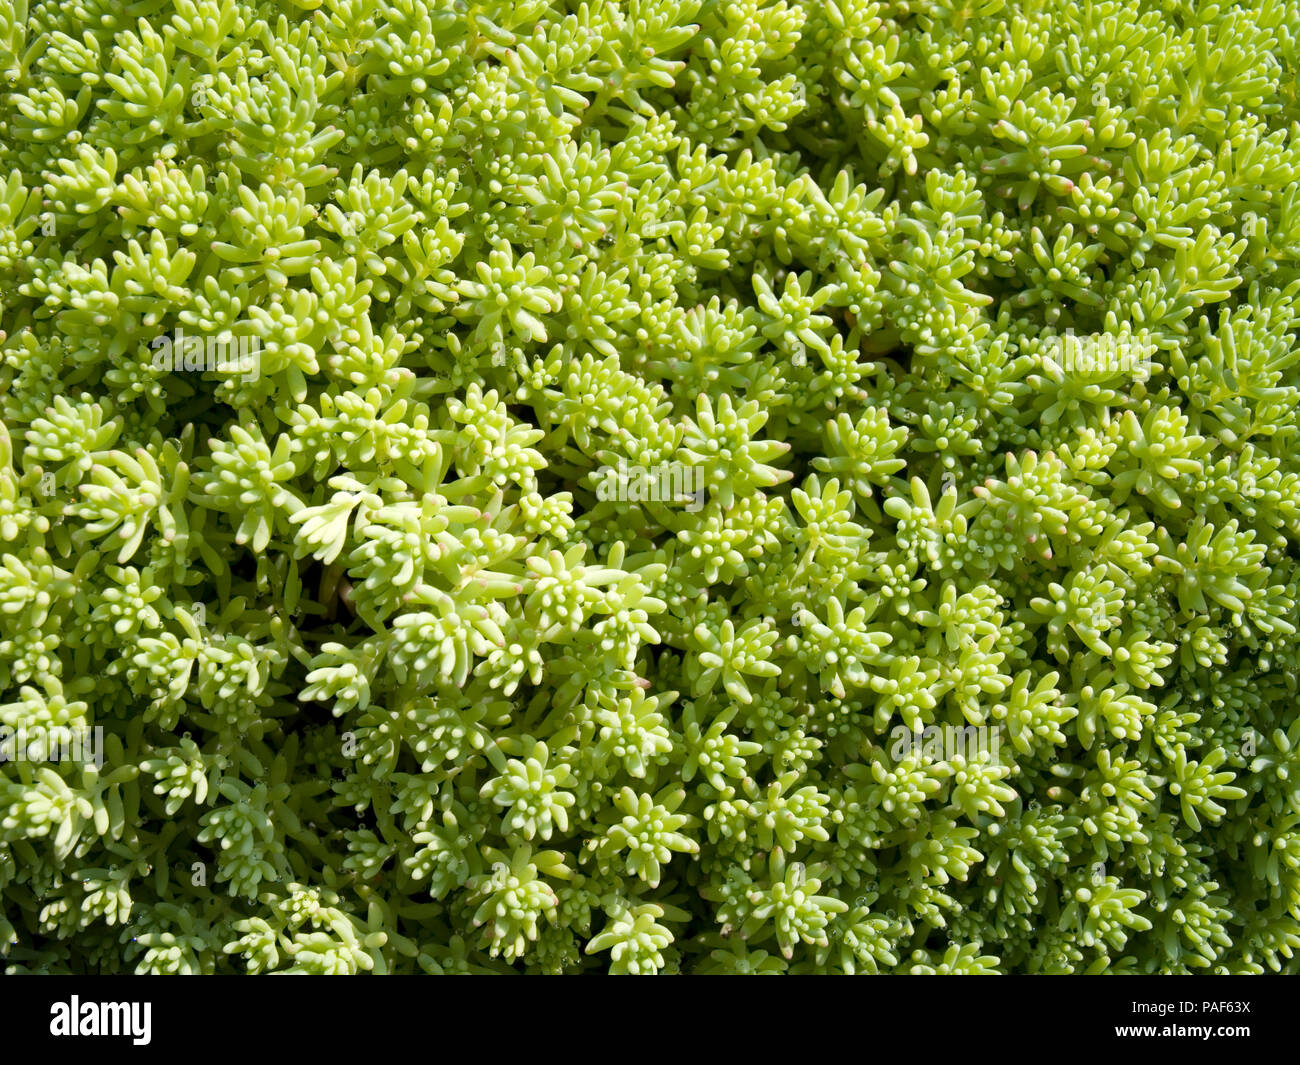 Sedum succulent ground-covering plant Stock Photo